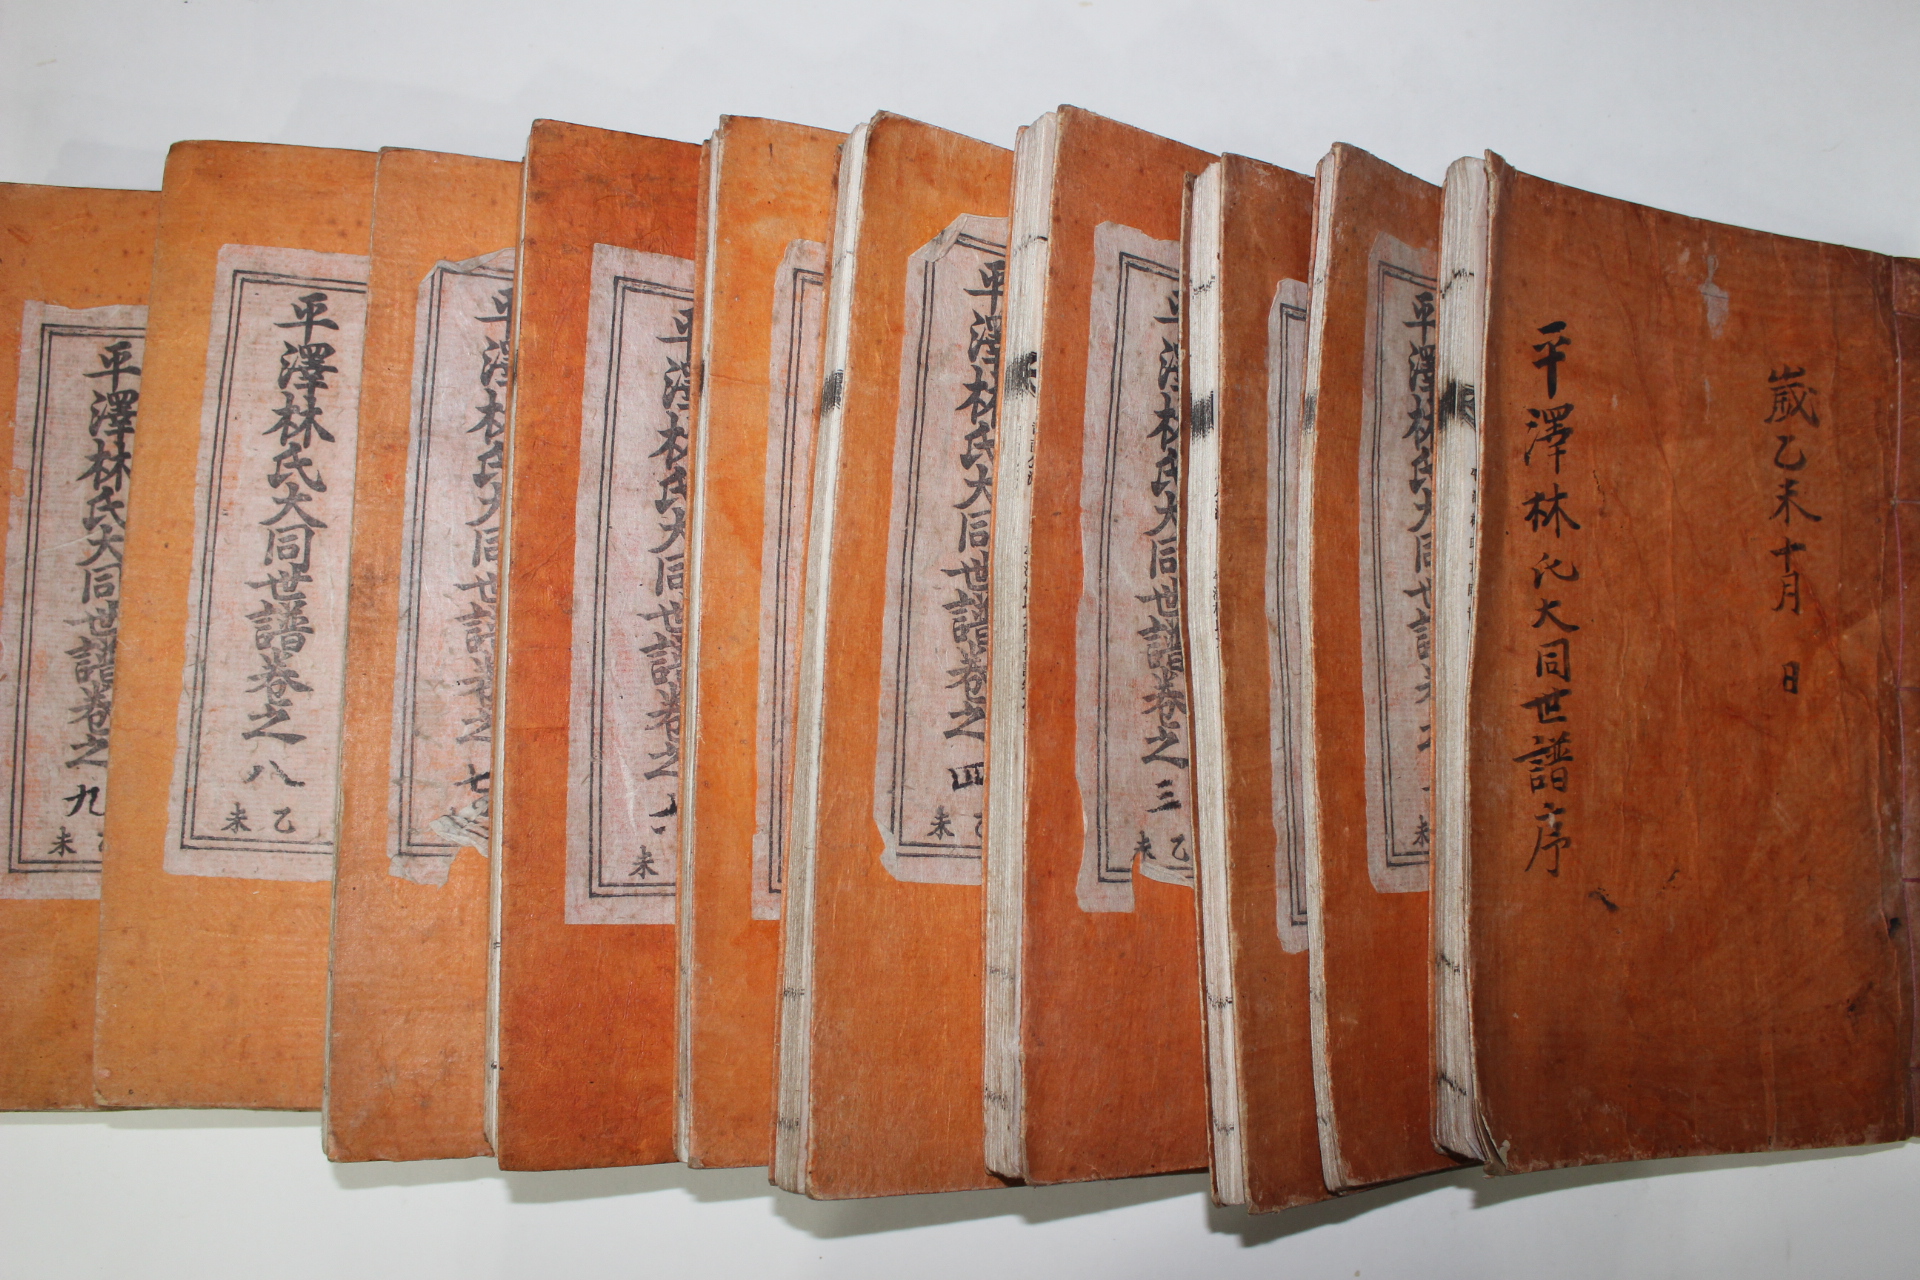 1955년 평택임씨대동세보(平澤林氏大同世譜) 10책완질